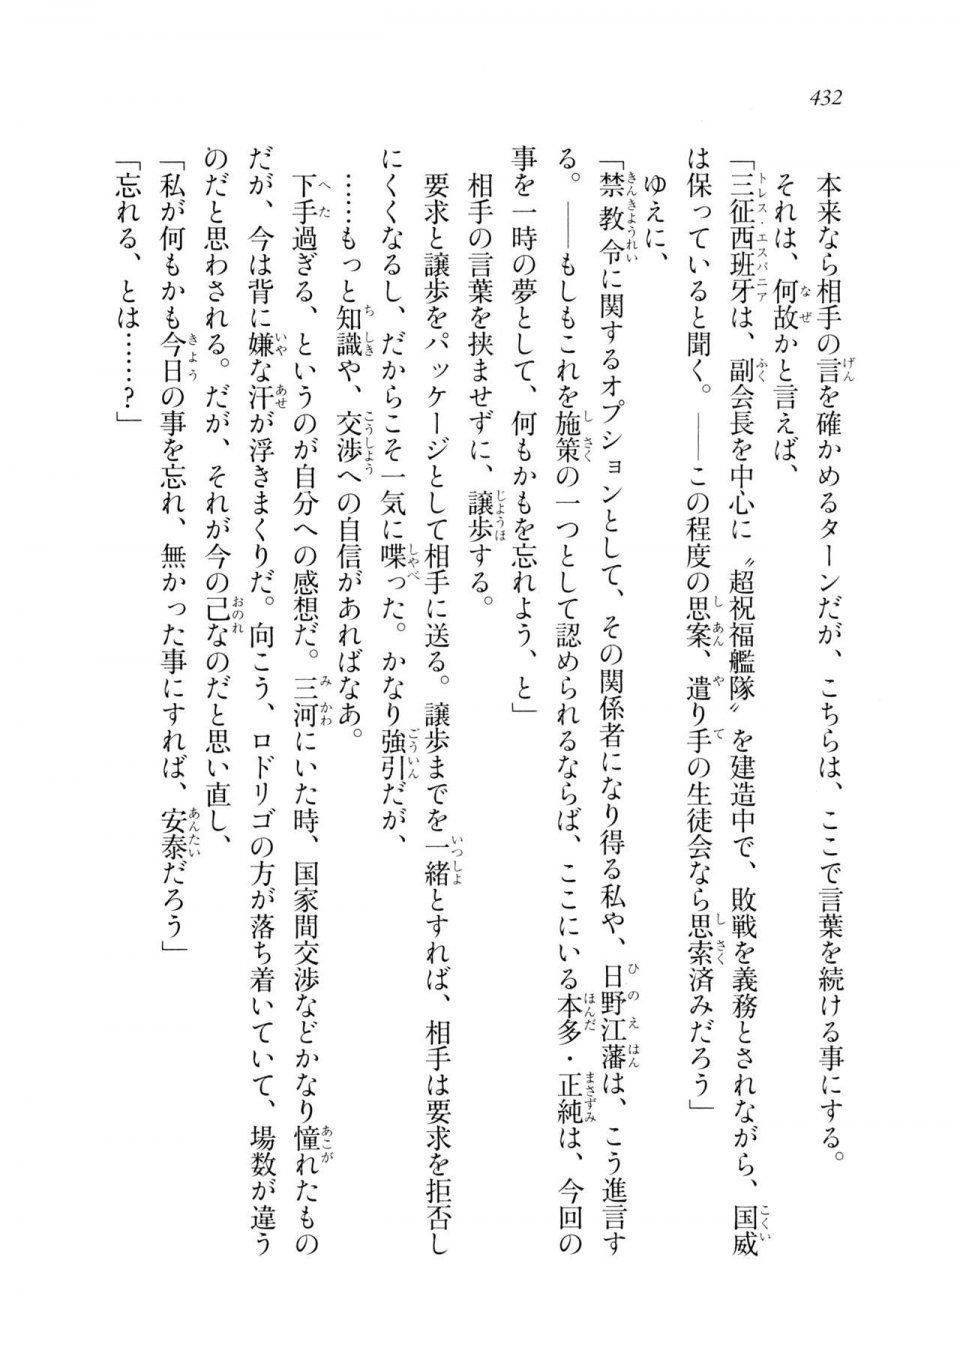 Kyoukai Senjou no Horizon LN Sidestory Vol 2 - Photo #430